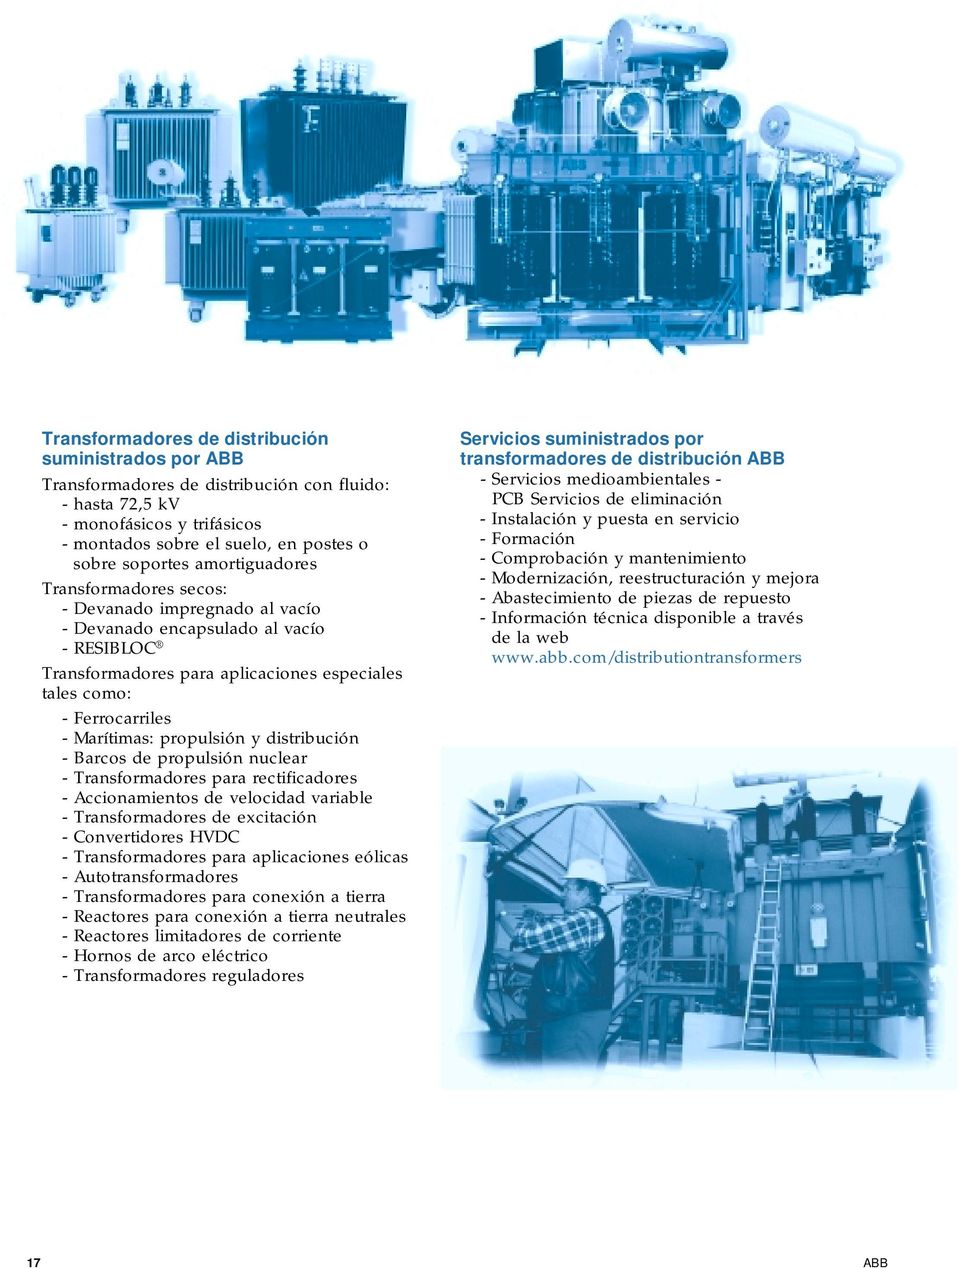 propulsión y distribución - Barcos de propulsión nuclear - Transformadores para rectificadores - Accionamientos de velocidad variable - Transformadores de excitación - Convertidores HVDC -